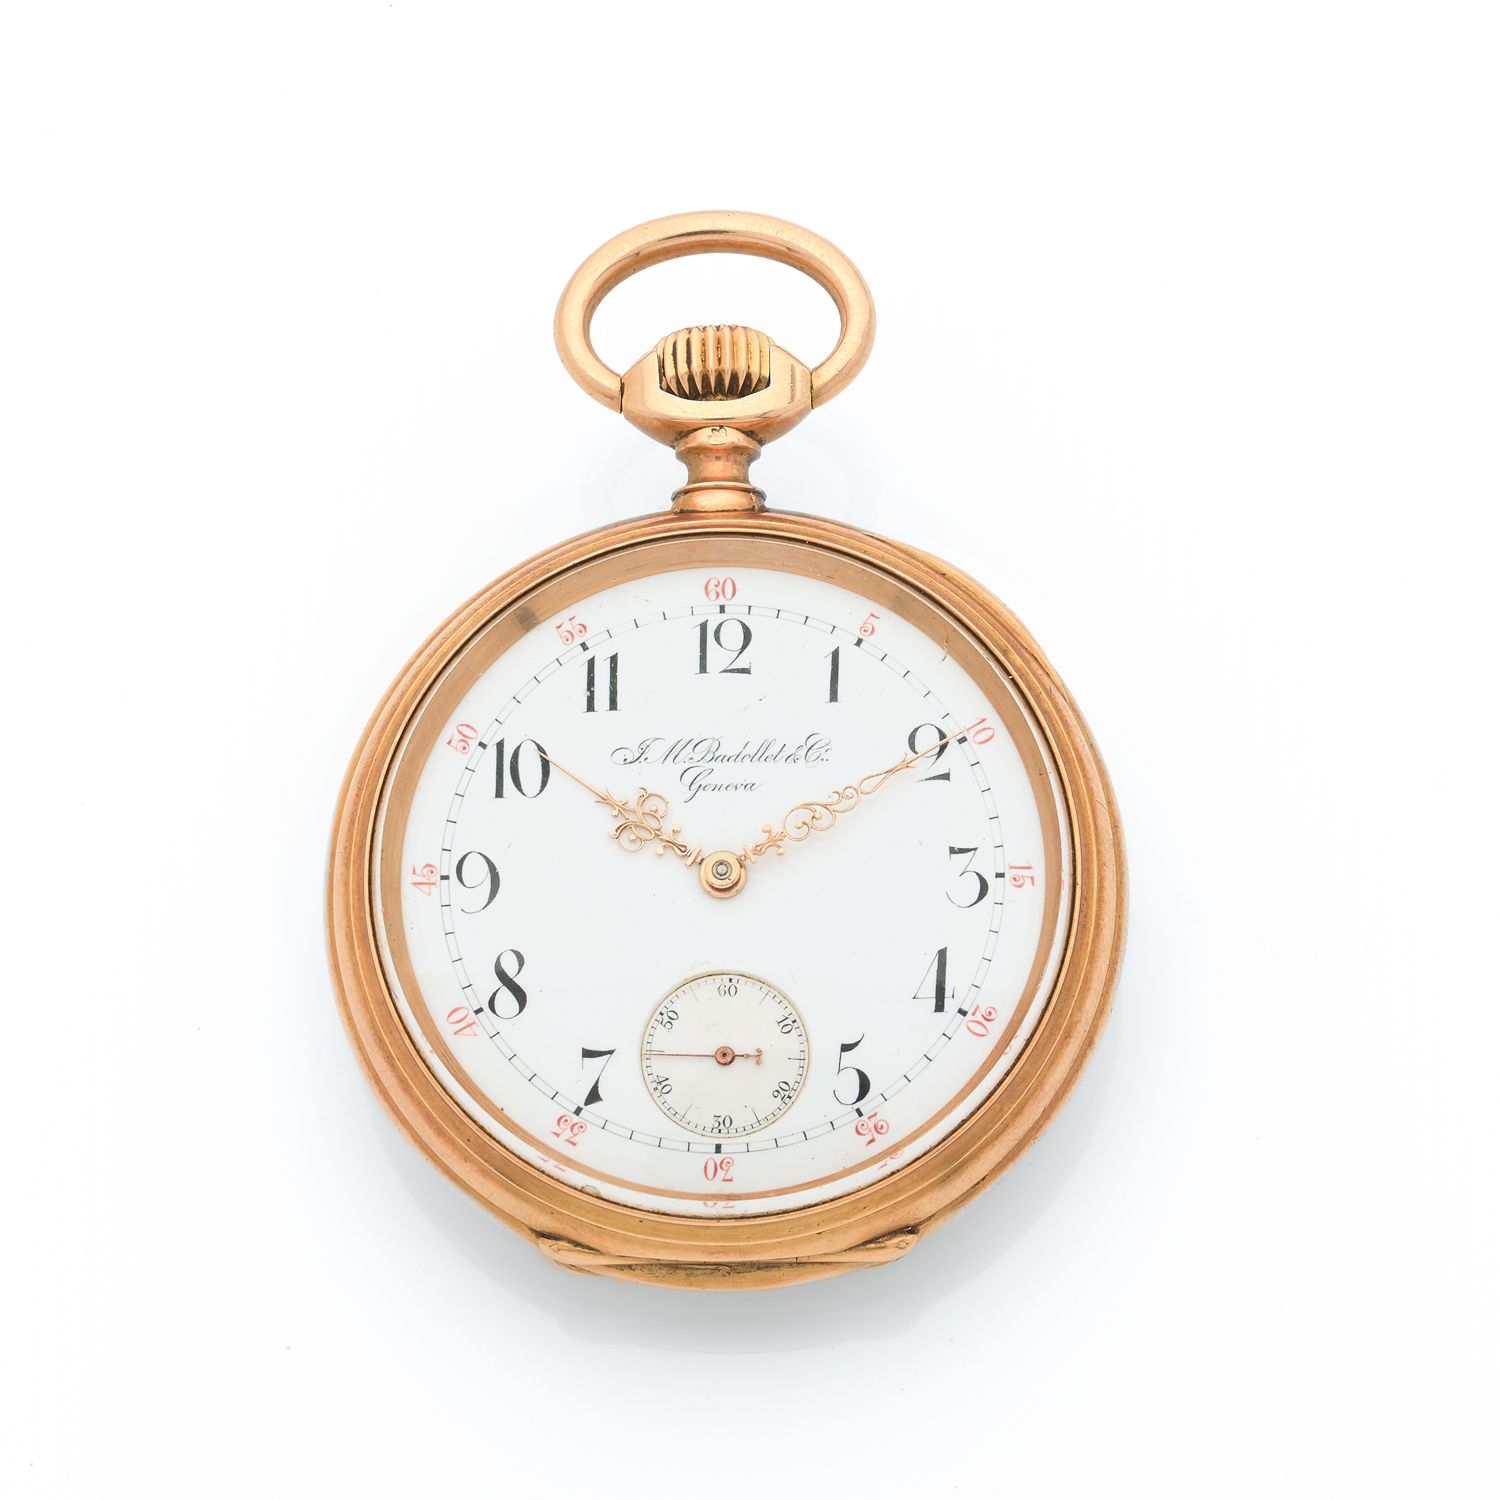 Null J.M. BADELLET Y CO
Reloj de bolsillo
N° : 84896.
Circa : 1900. 
Elegante re&hellip;